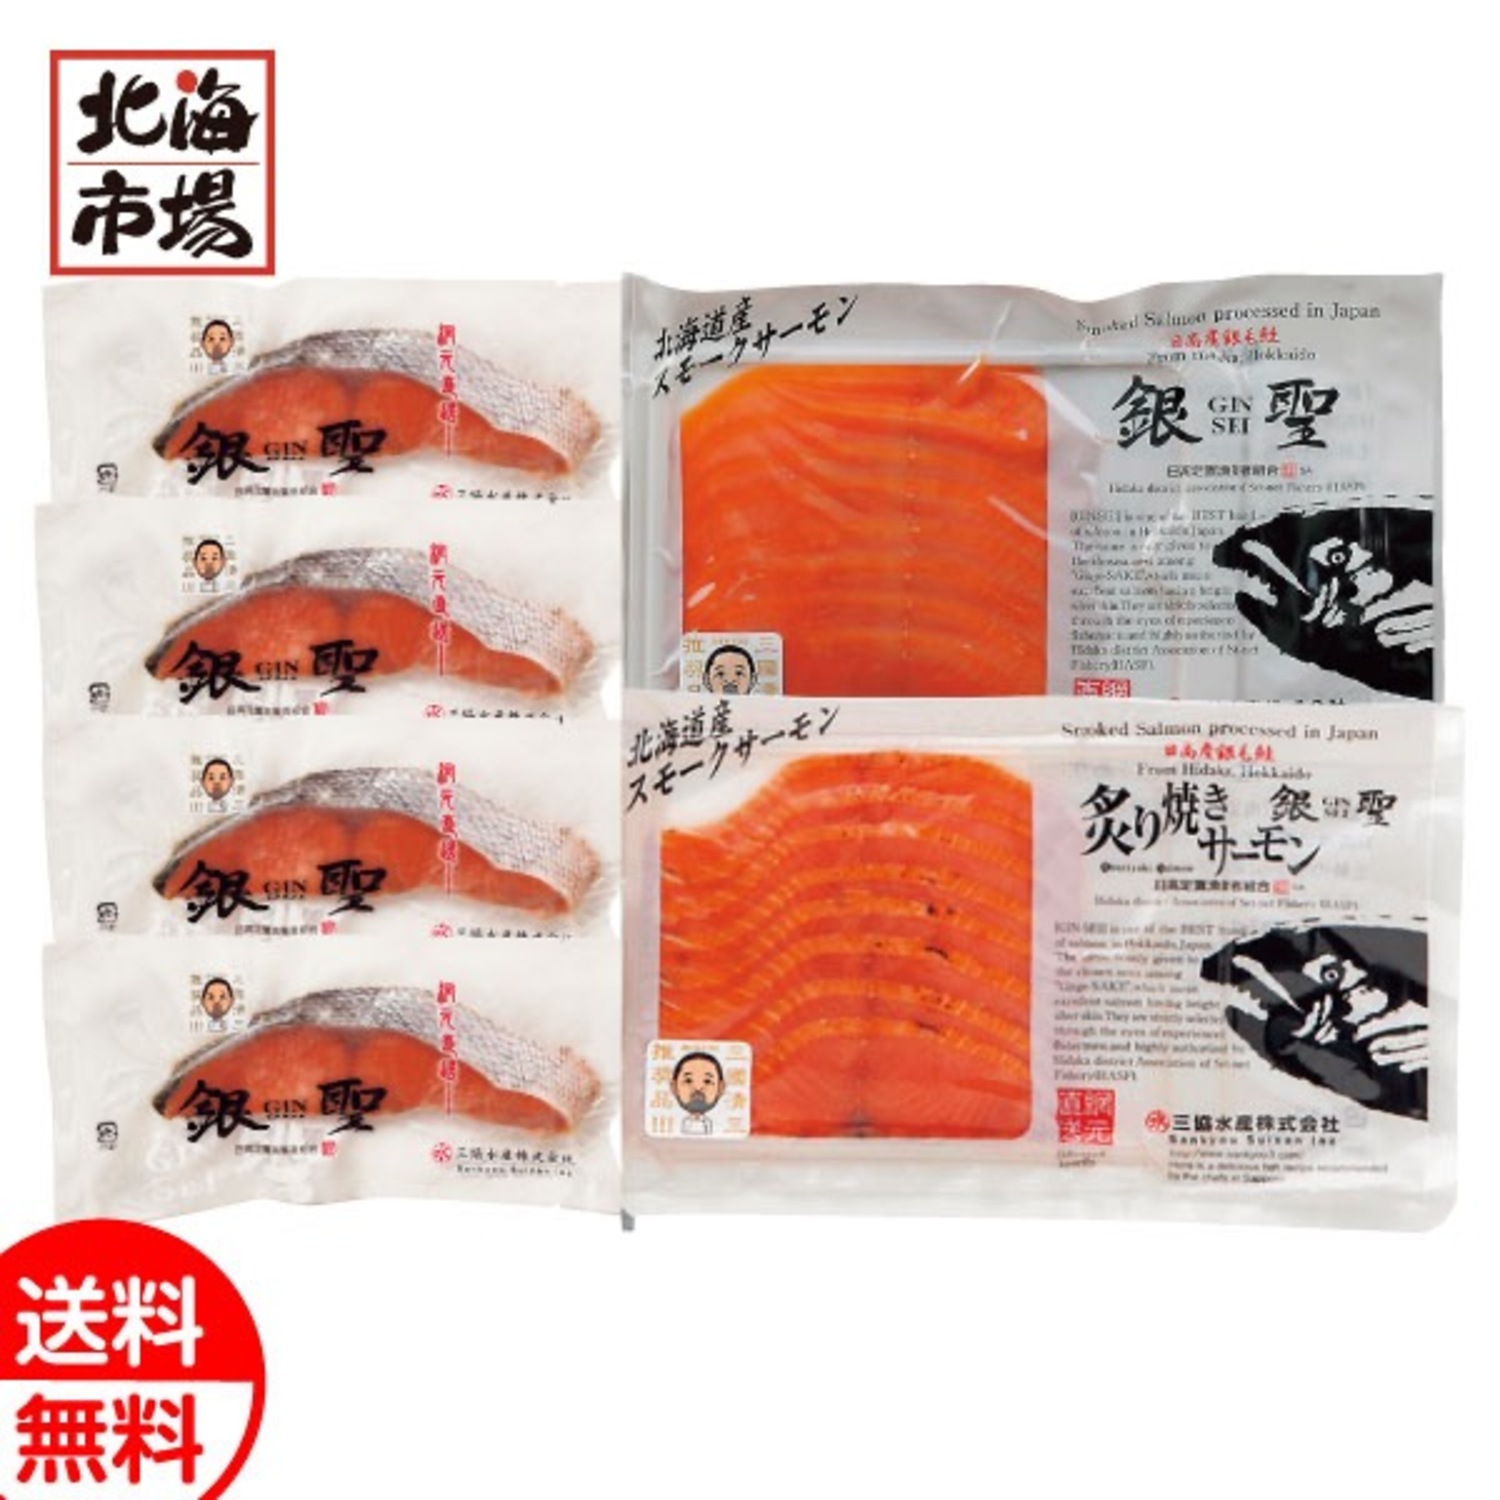 三國シェフ推奨 漁吉丸の銀聖切身＆スモークサーモン炙り焼きセット 送料無料